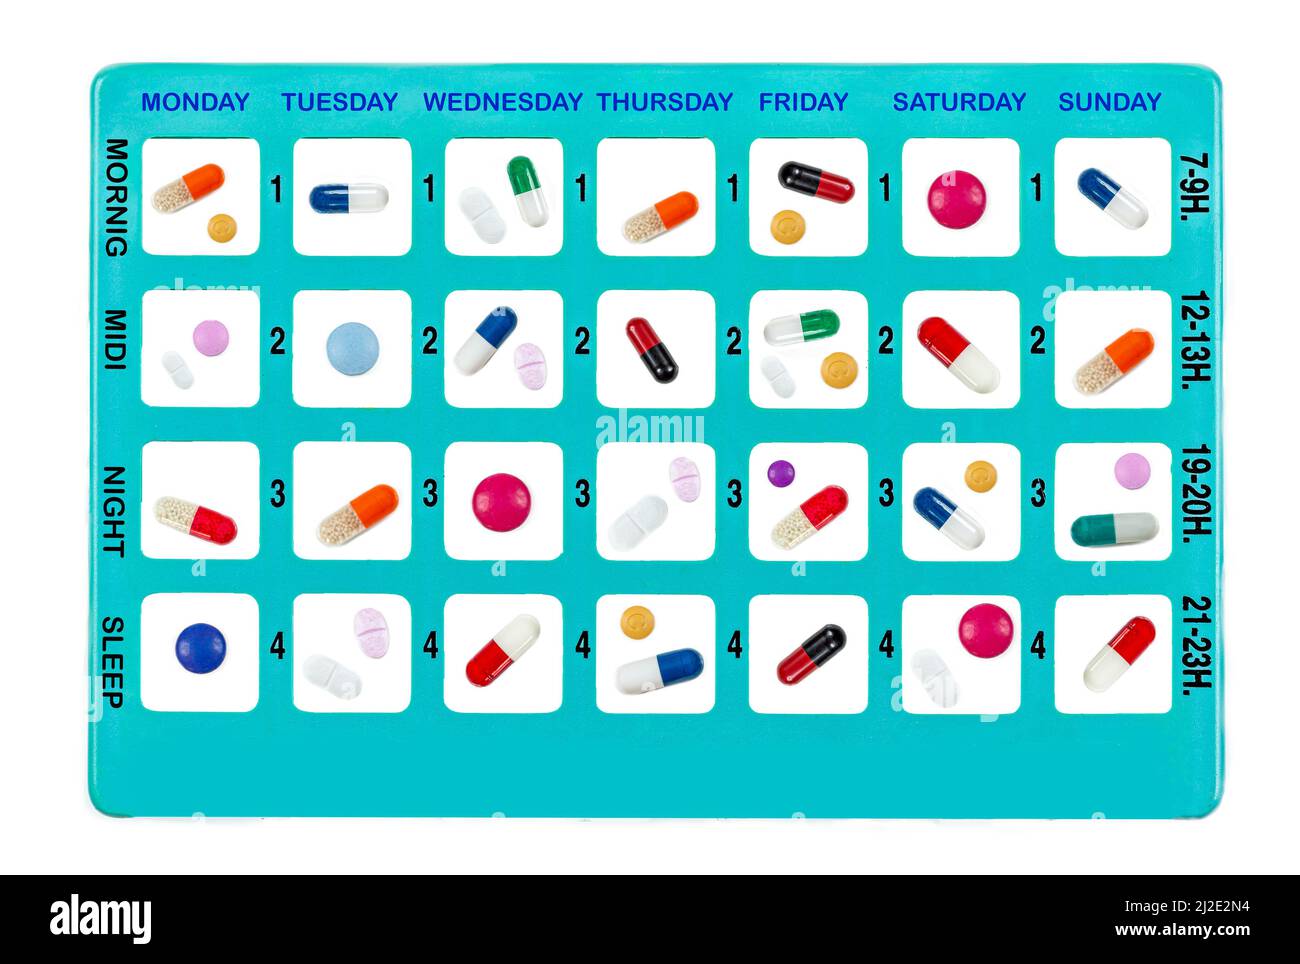 Wöchentliche Medikamente in einem Pillenkasten für den täglichen Gebrauch auf englisch Stockfoto